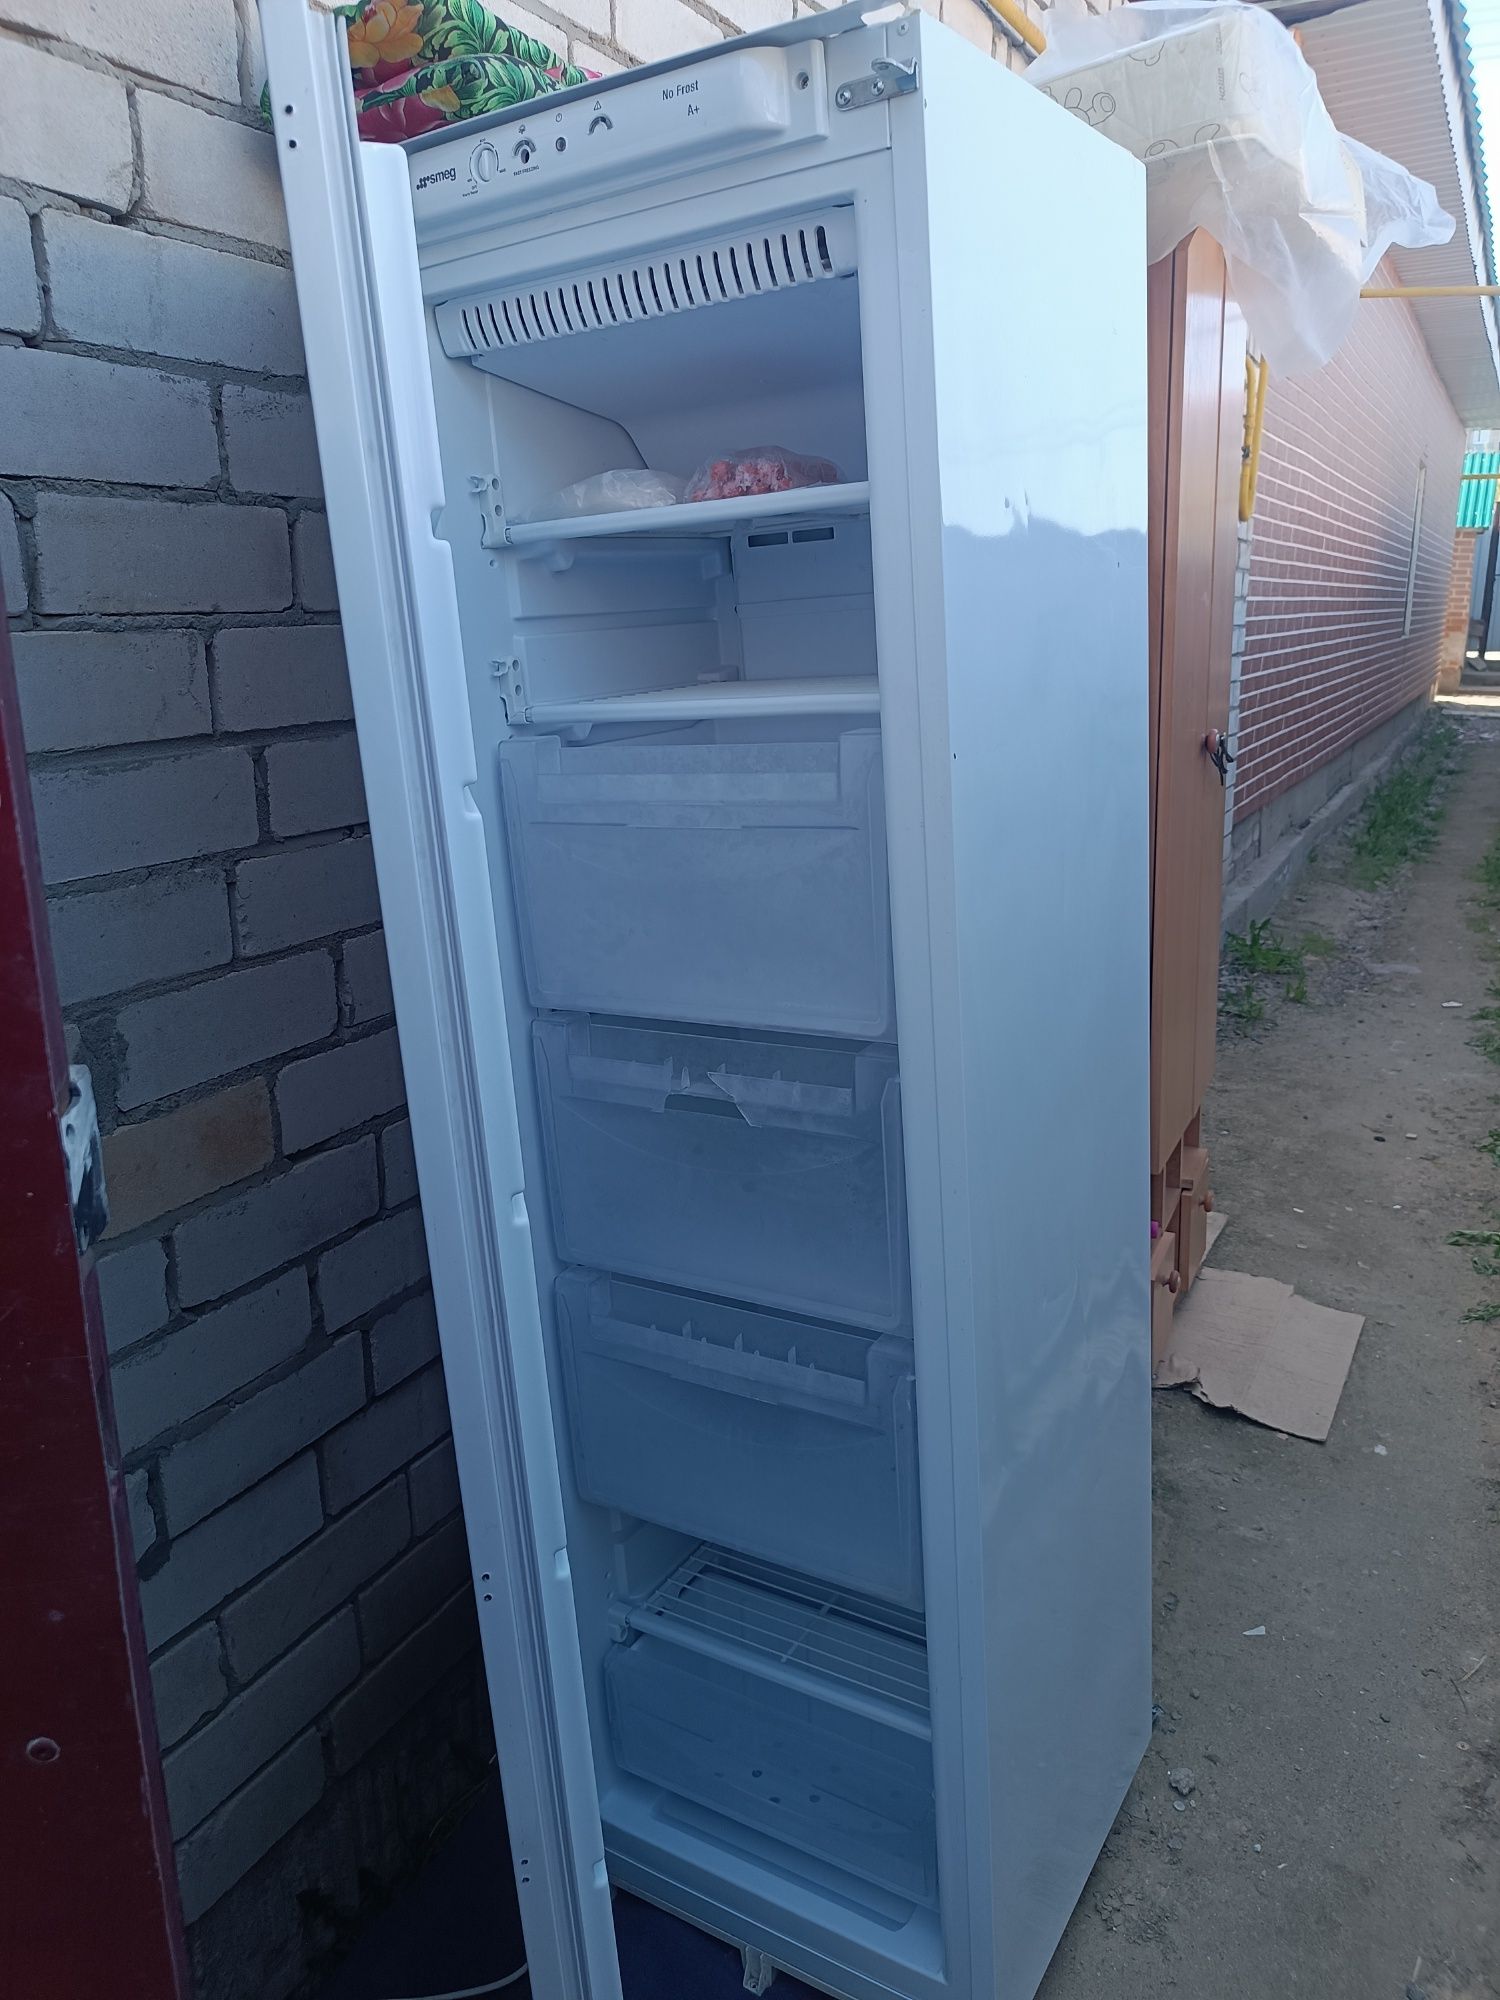 Продам морозильный холодильник